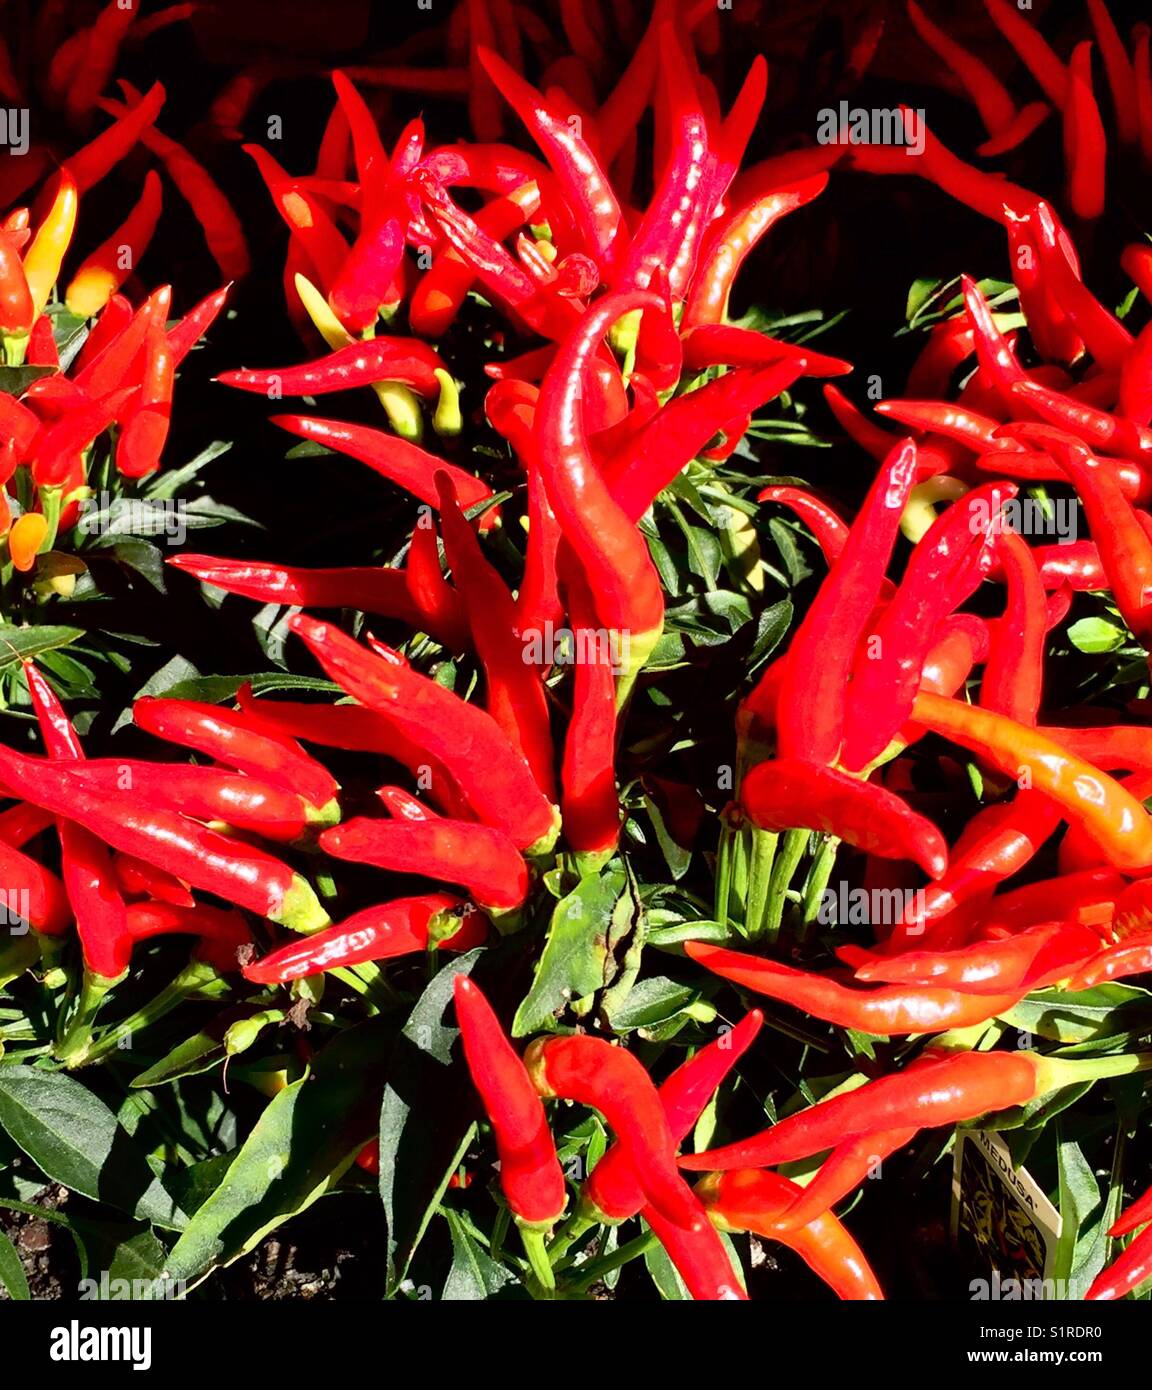 Sole inzuppato Radiant red (qualche bianco) peperoni ornamentali Foto Stock